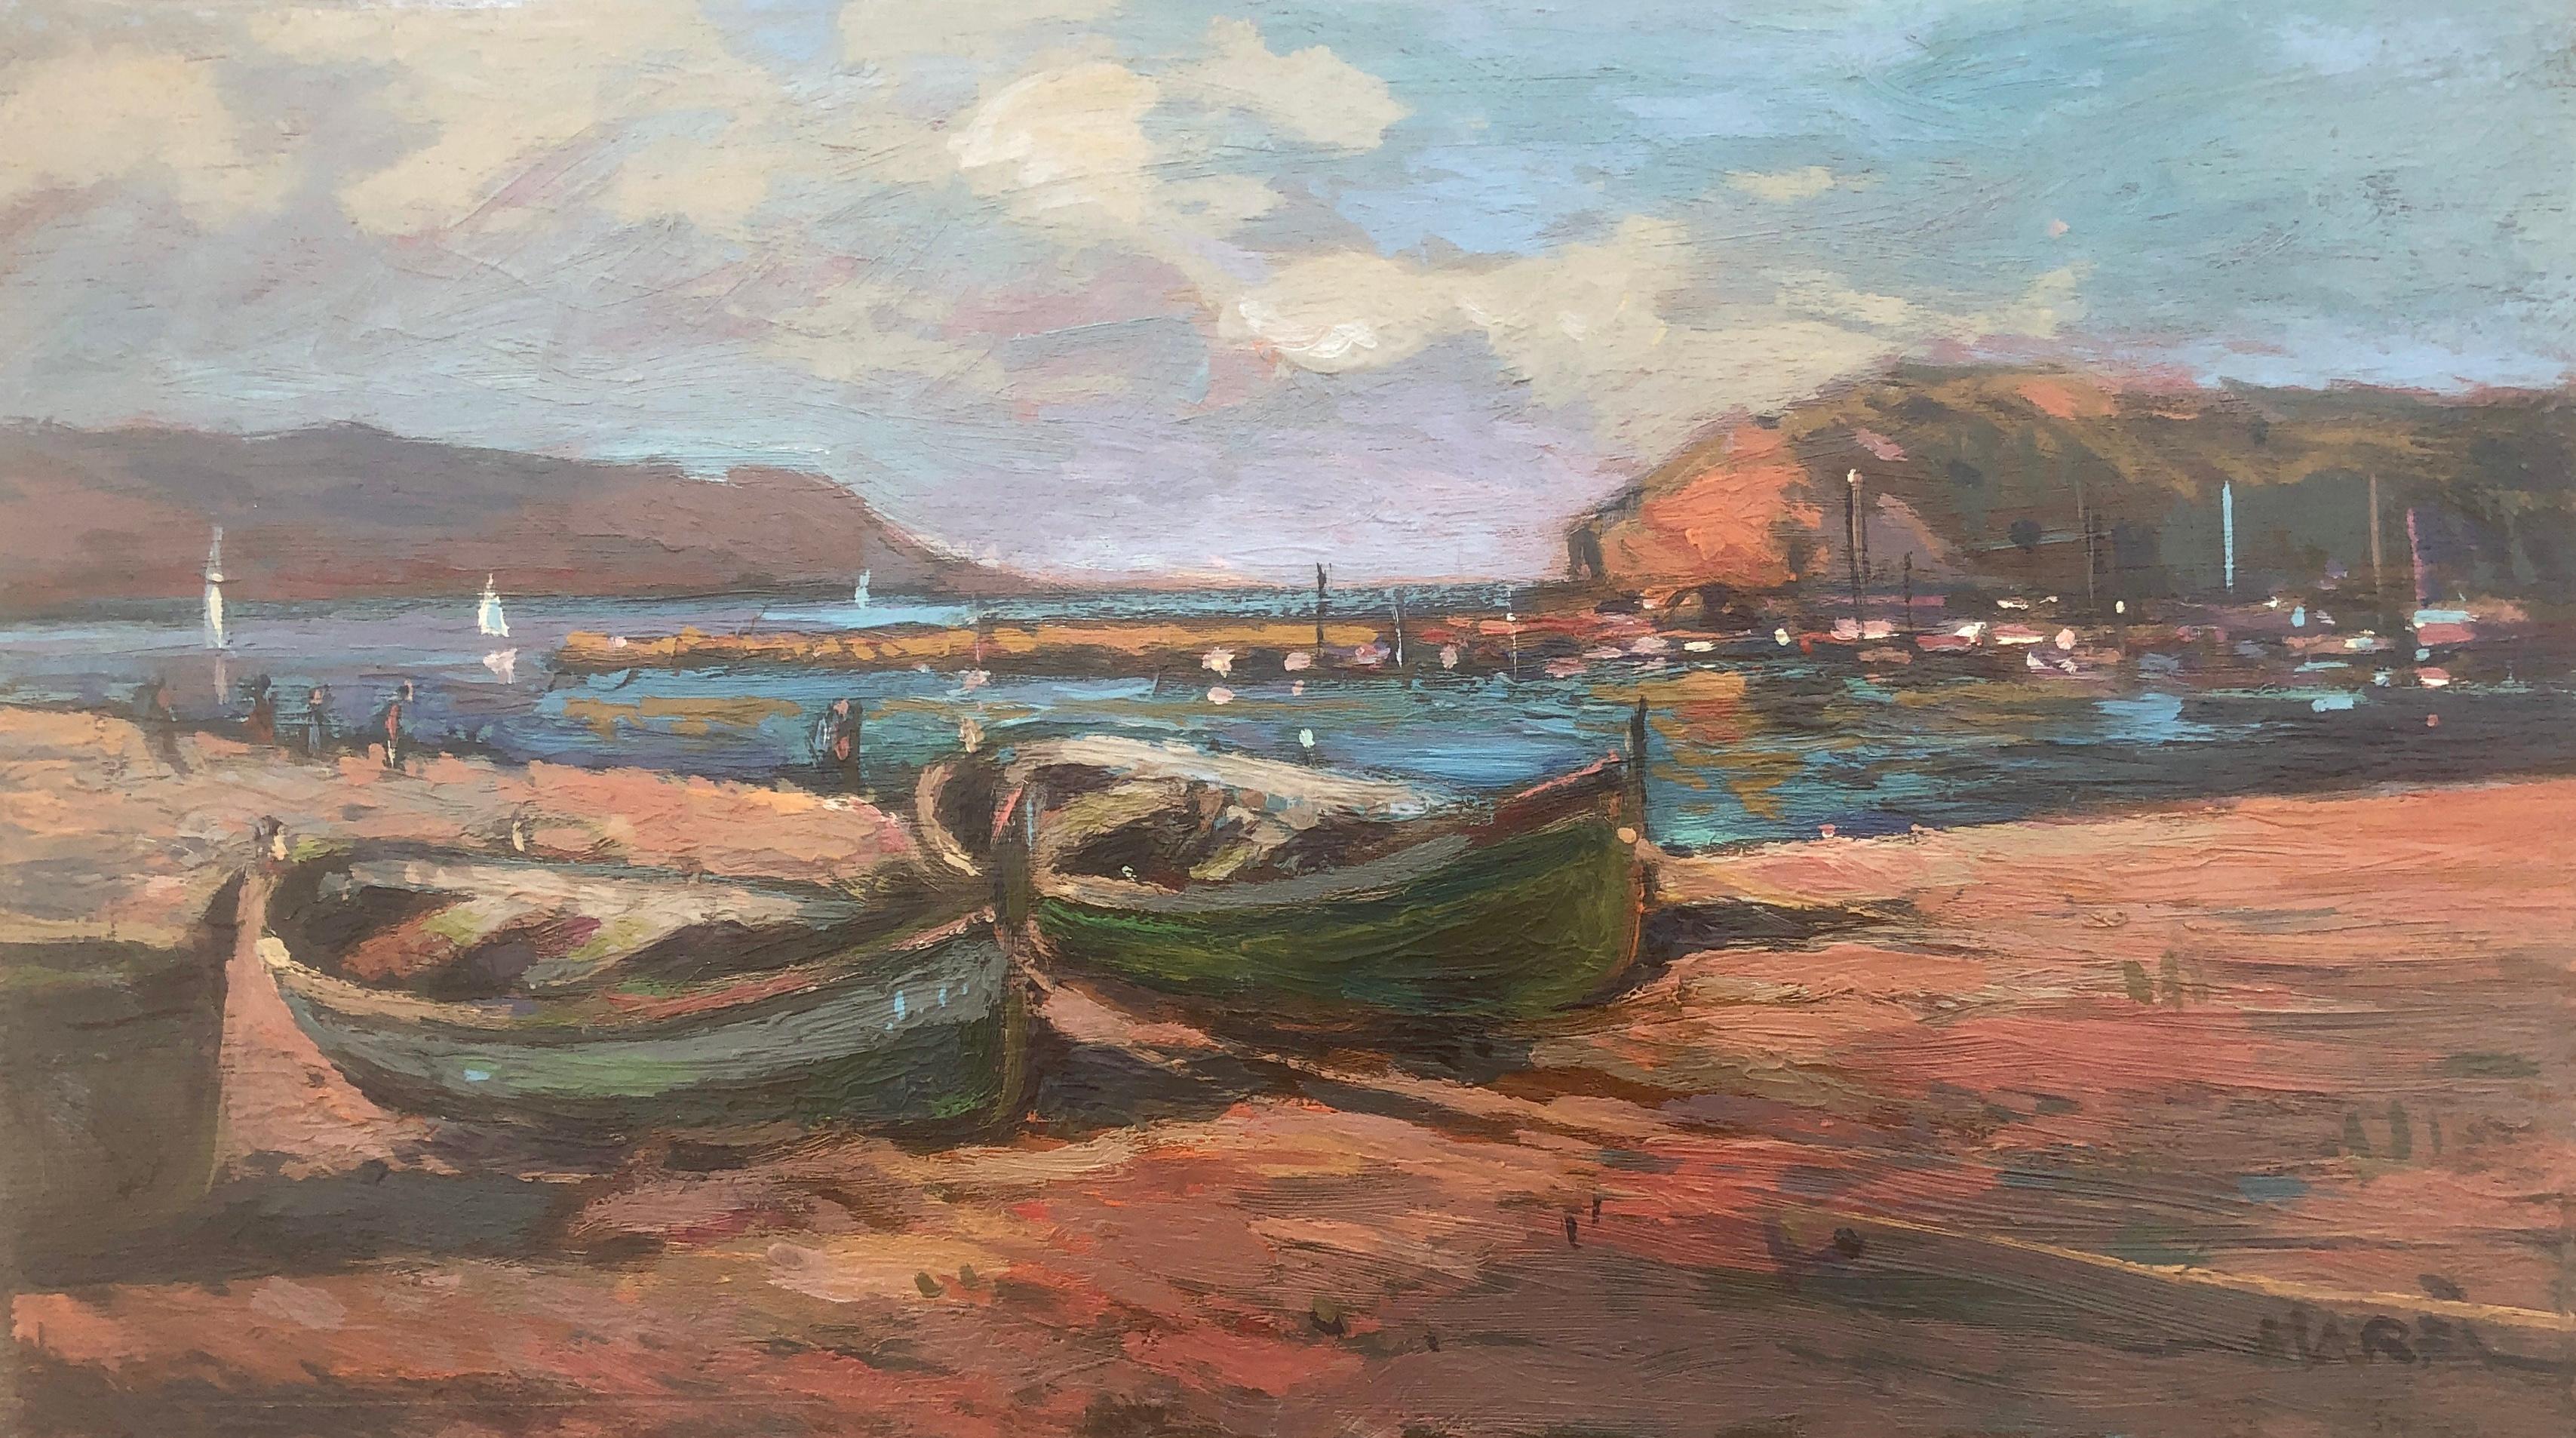 Plage de pêcheurs paysage marin espagnol peinture originale huile sur carton méditerranée